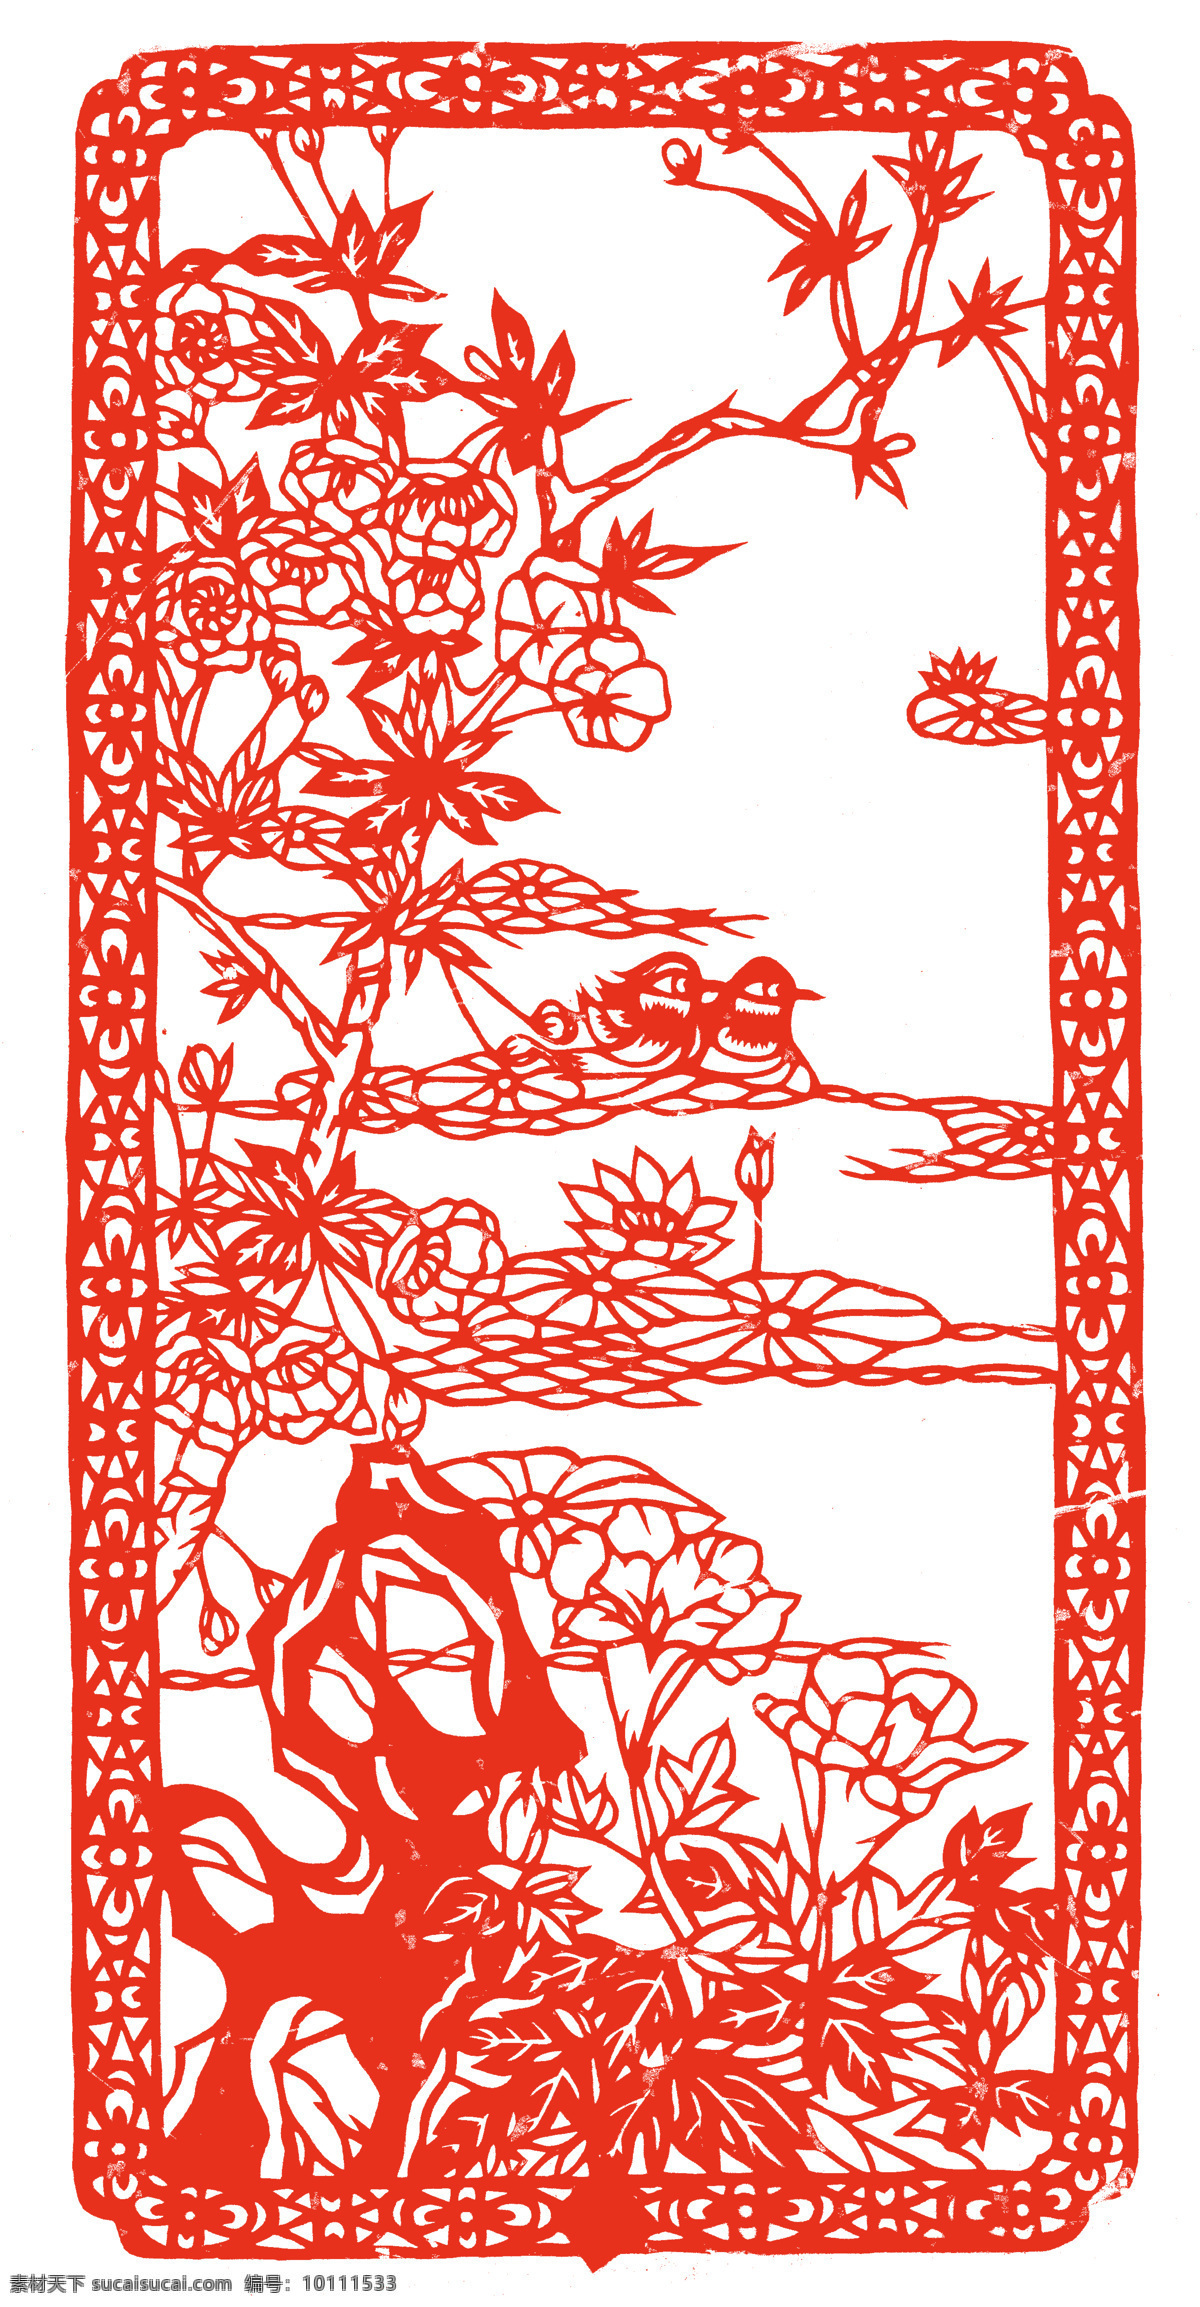 鸳鸯戏水 剪纸艺术 中国 风 古典 花纹 传统 图案 民间剪纸艺术 民间画 文化艺术